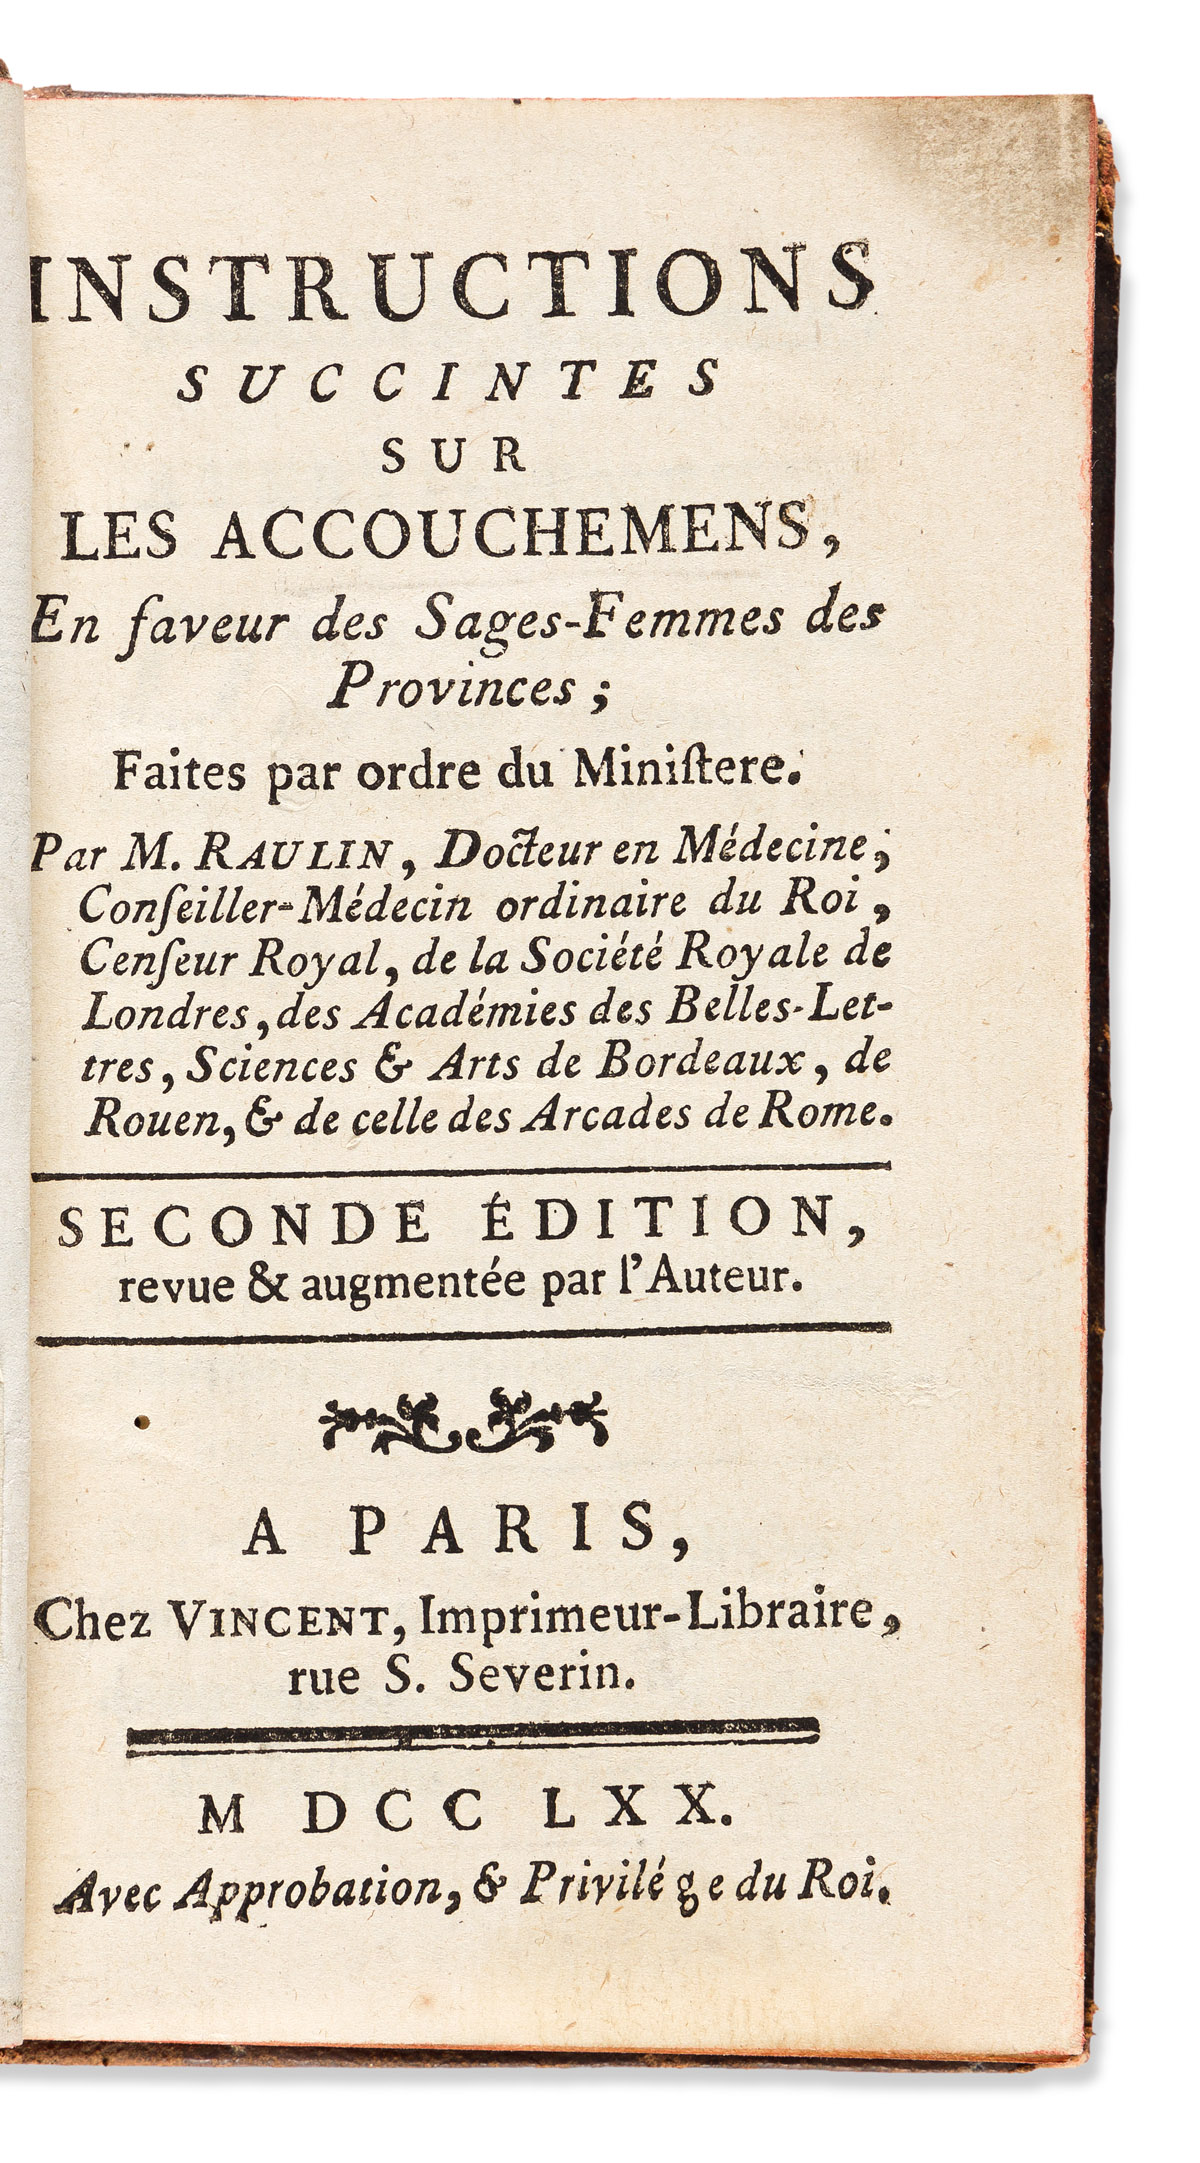 Bourgeois [aka] Boursier, Louise (1563-1636) Observations Diverses sur la Sterilité, Perte de Fruict, Foecondité, Accouchements, et Mal